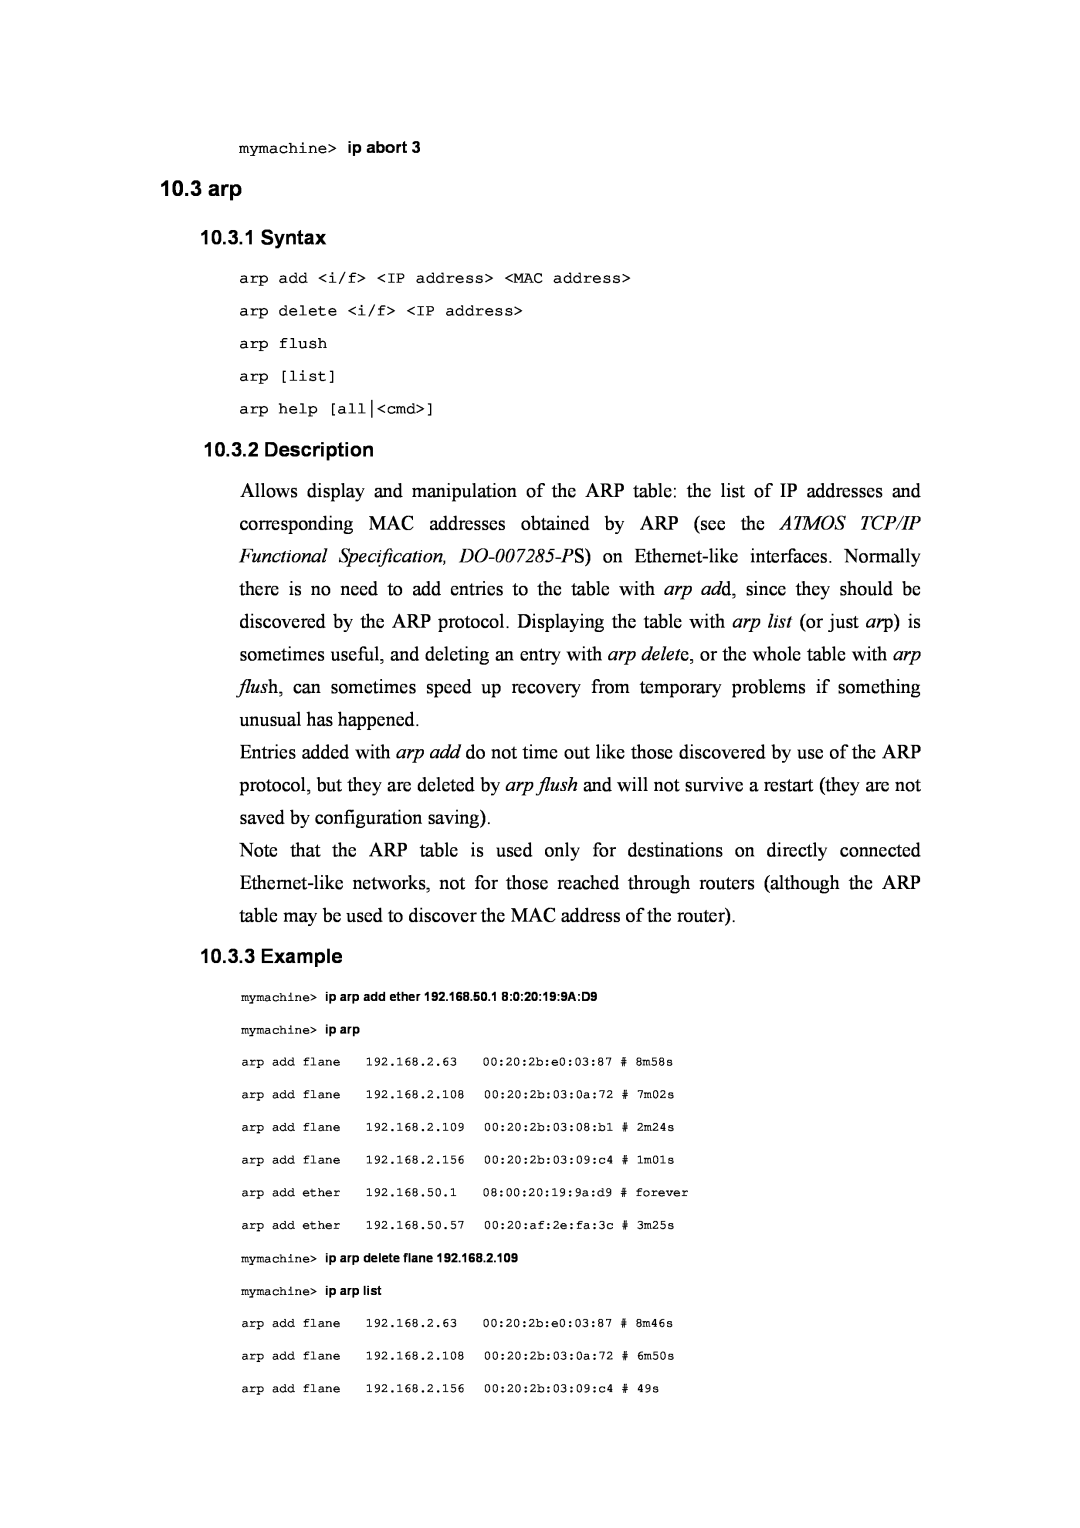 Atlantis Land A02-RA(Atmos)_ME01 manual 10.3 arp, Syntax, Description, Example 